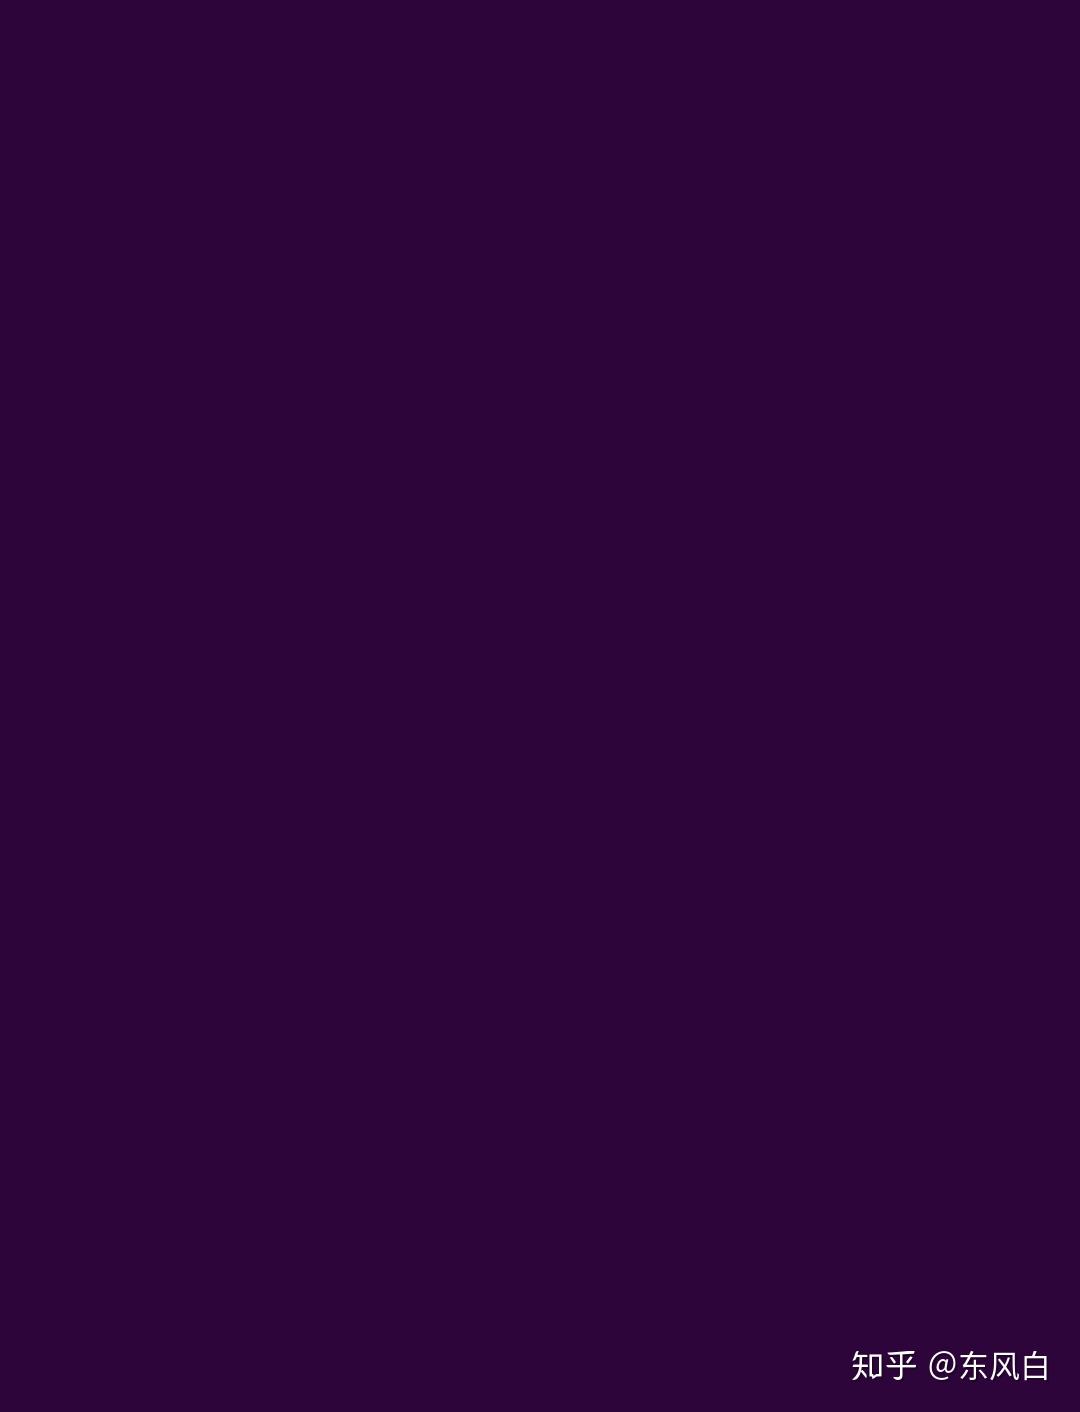 纯色的背景图 真的是 纯色哦 主色调是purple和blue的纯色壁纸 纯色背景图紫色 精作网